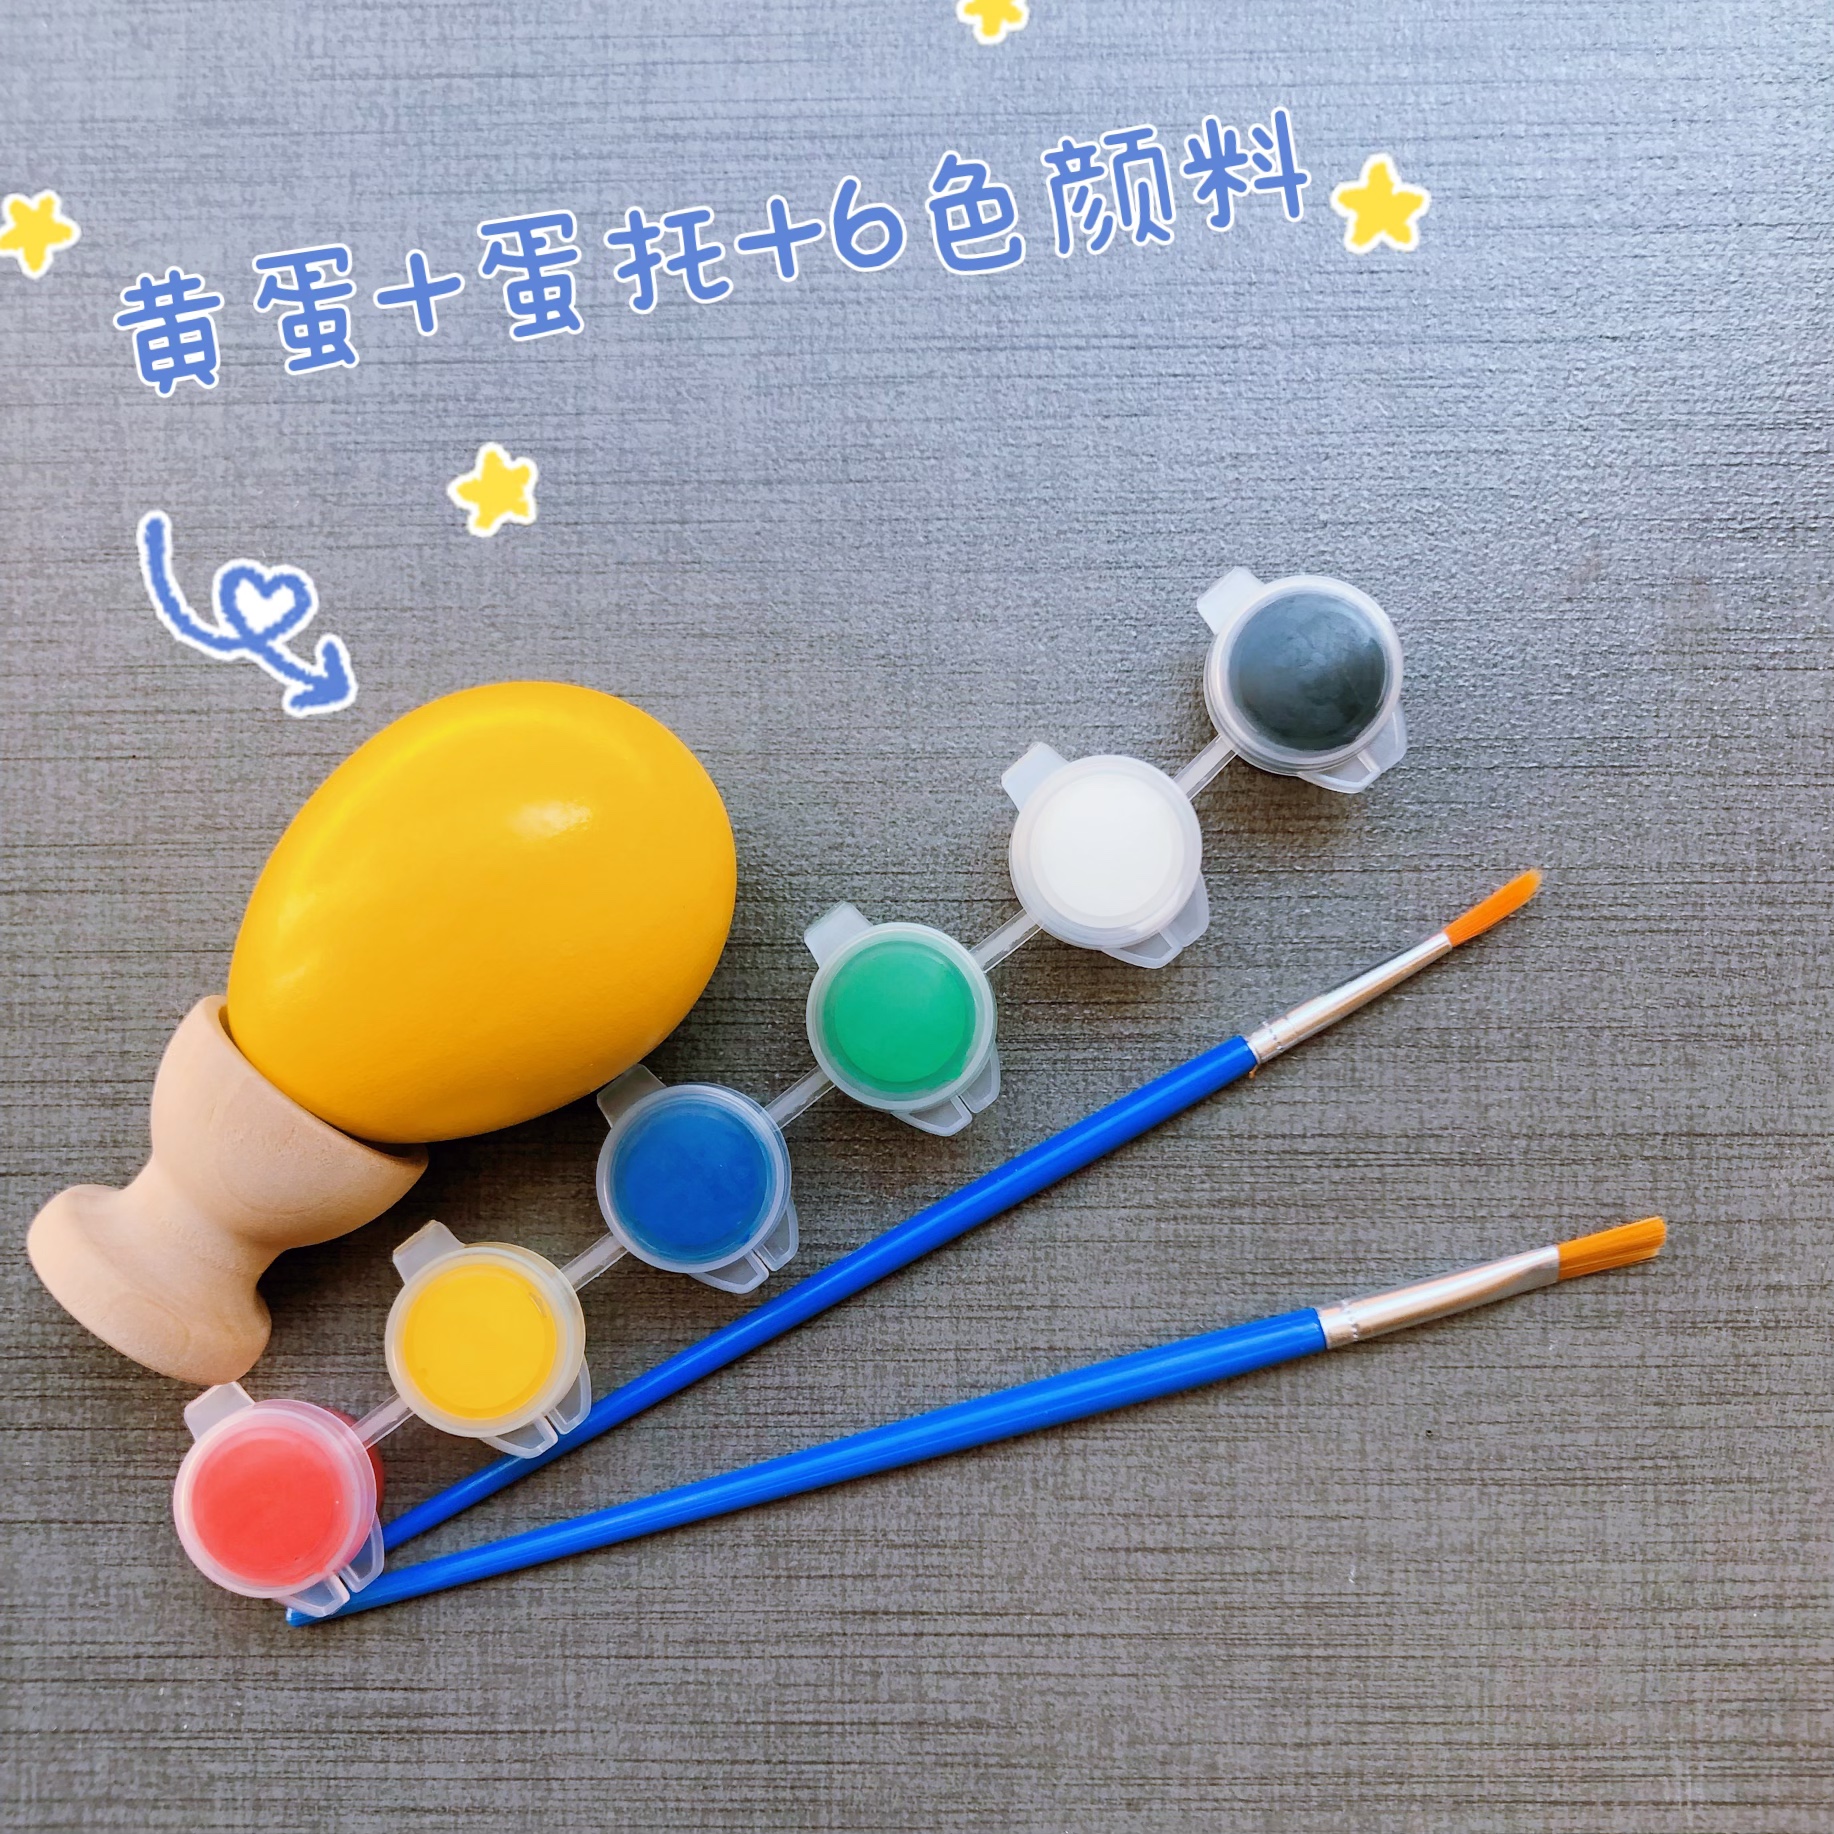 木制仿真鸡蛋端午节画画玩具DIY彩绘涂鸦复活节彩蛋手工制作材料